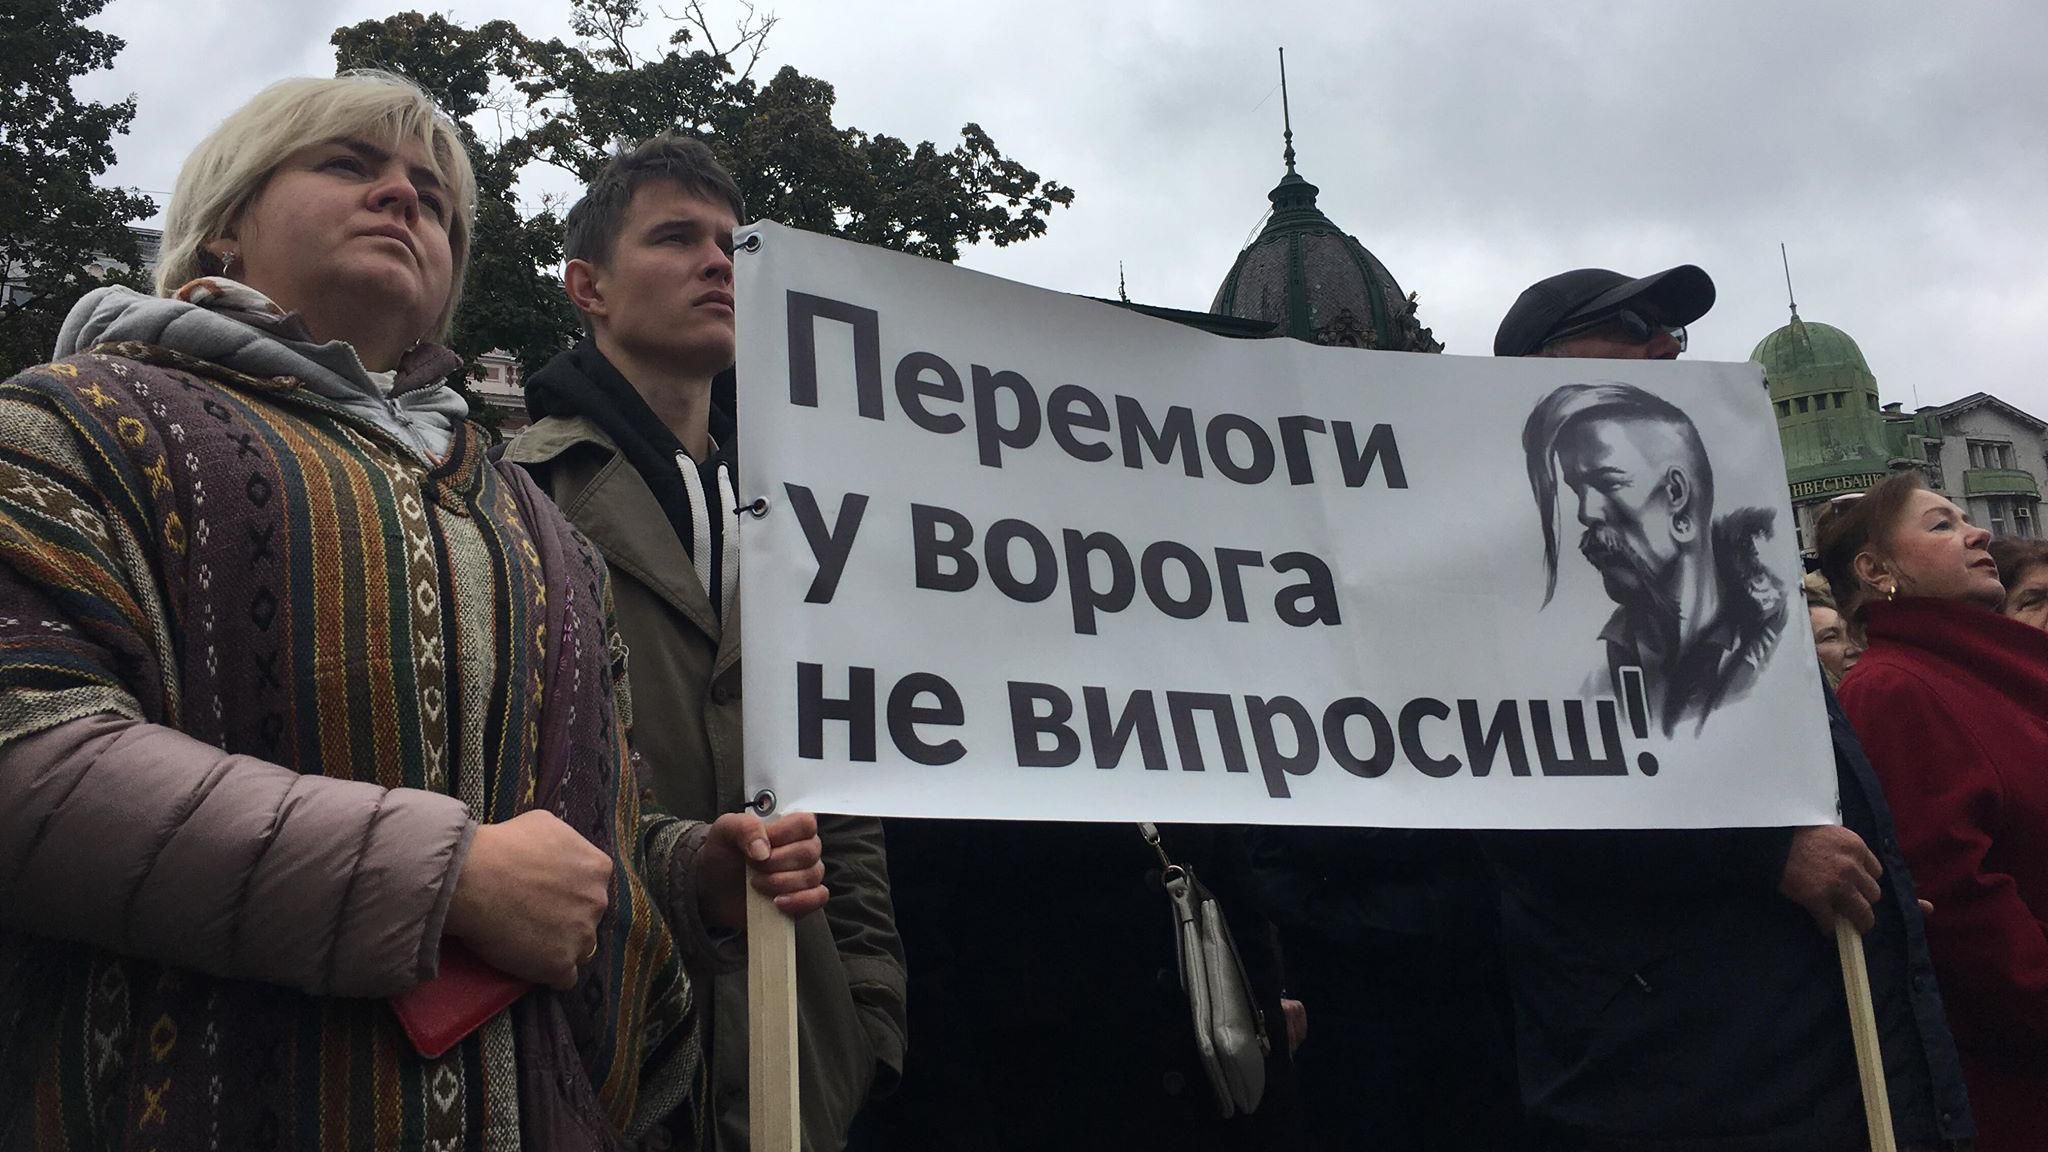 Чи підтримують українці протести "Ні капітуляції": опитування